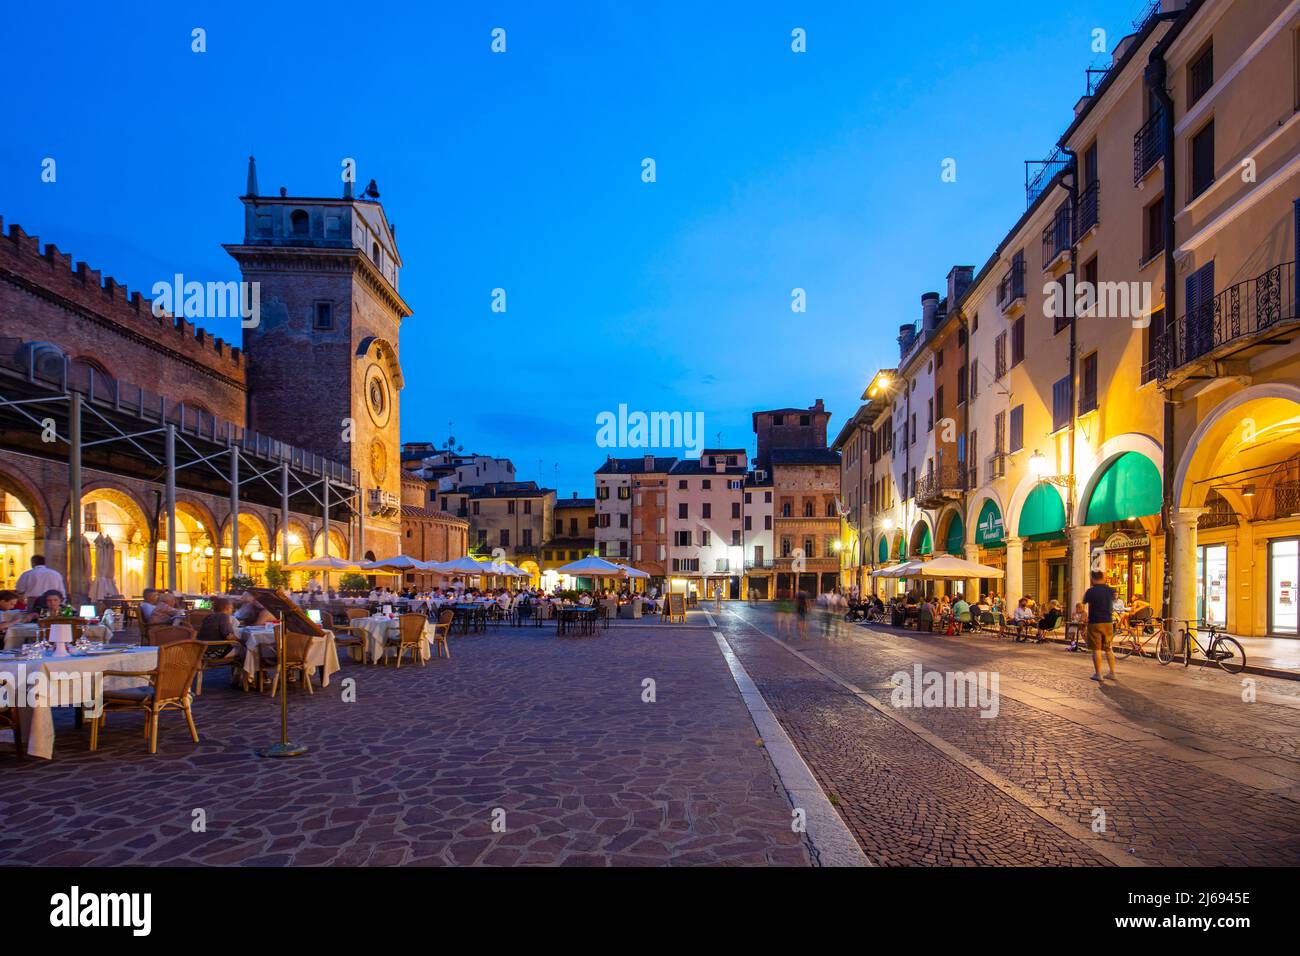 Piazza delle Erbe, Mantova (Mantua), UNESCO World Heritage Site, Lombardia (Lombardy), Italy Stock Photo